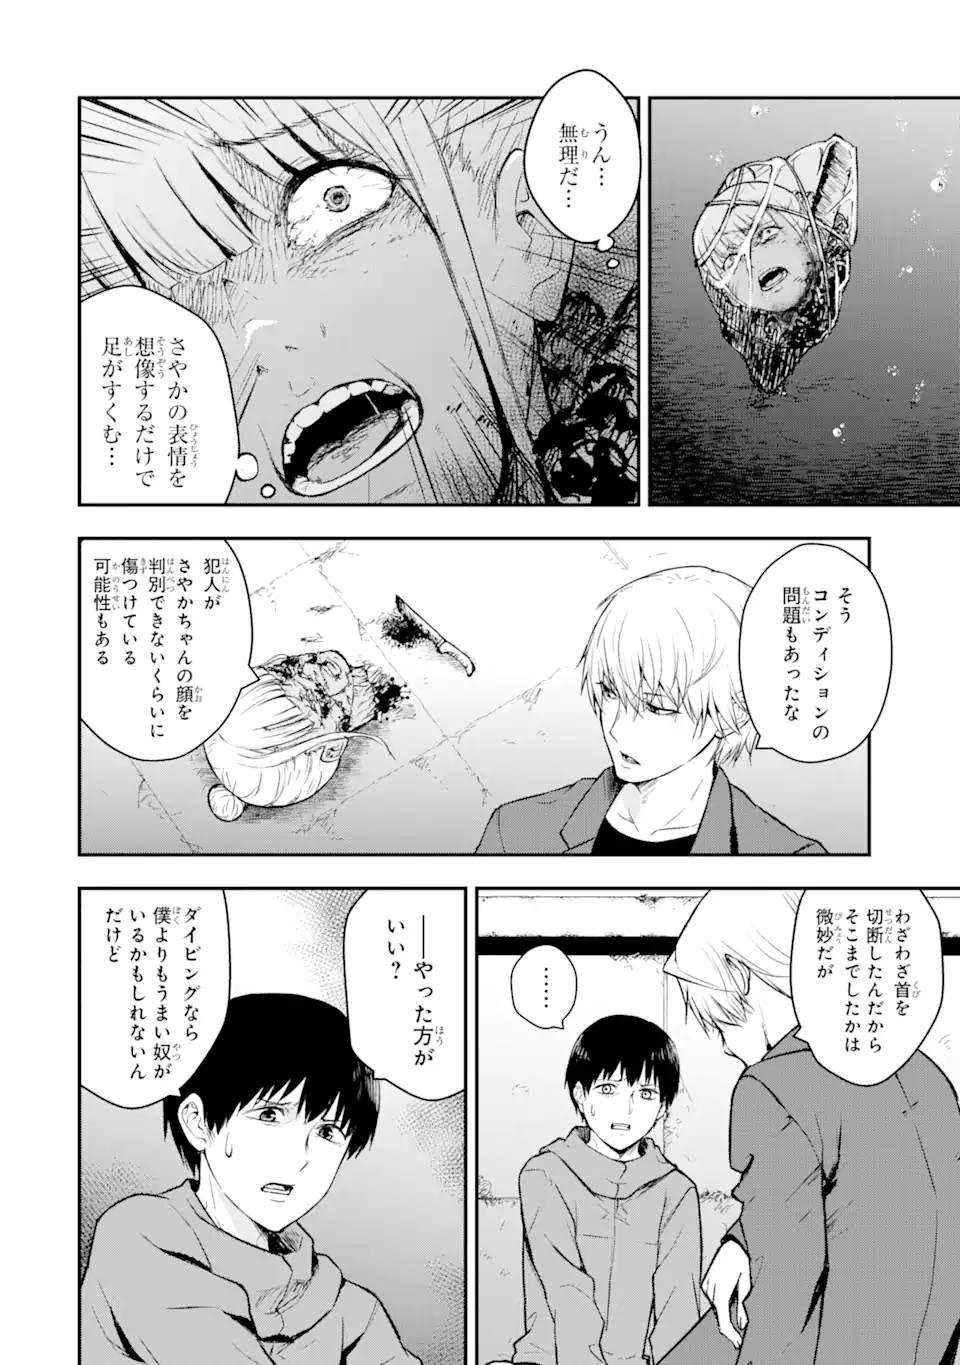 Hakobune – Shinubeki na no wa Dare ka? - Chapter 8.3 - Page 2